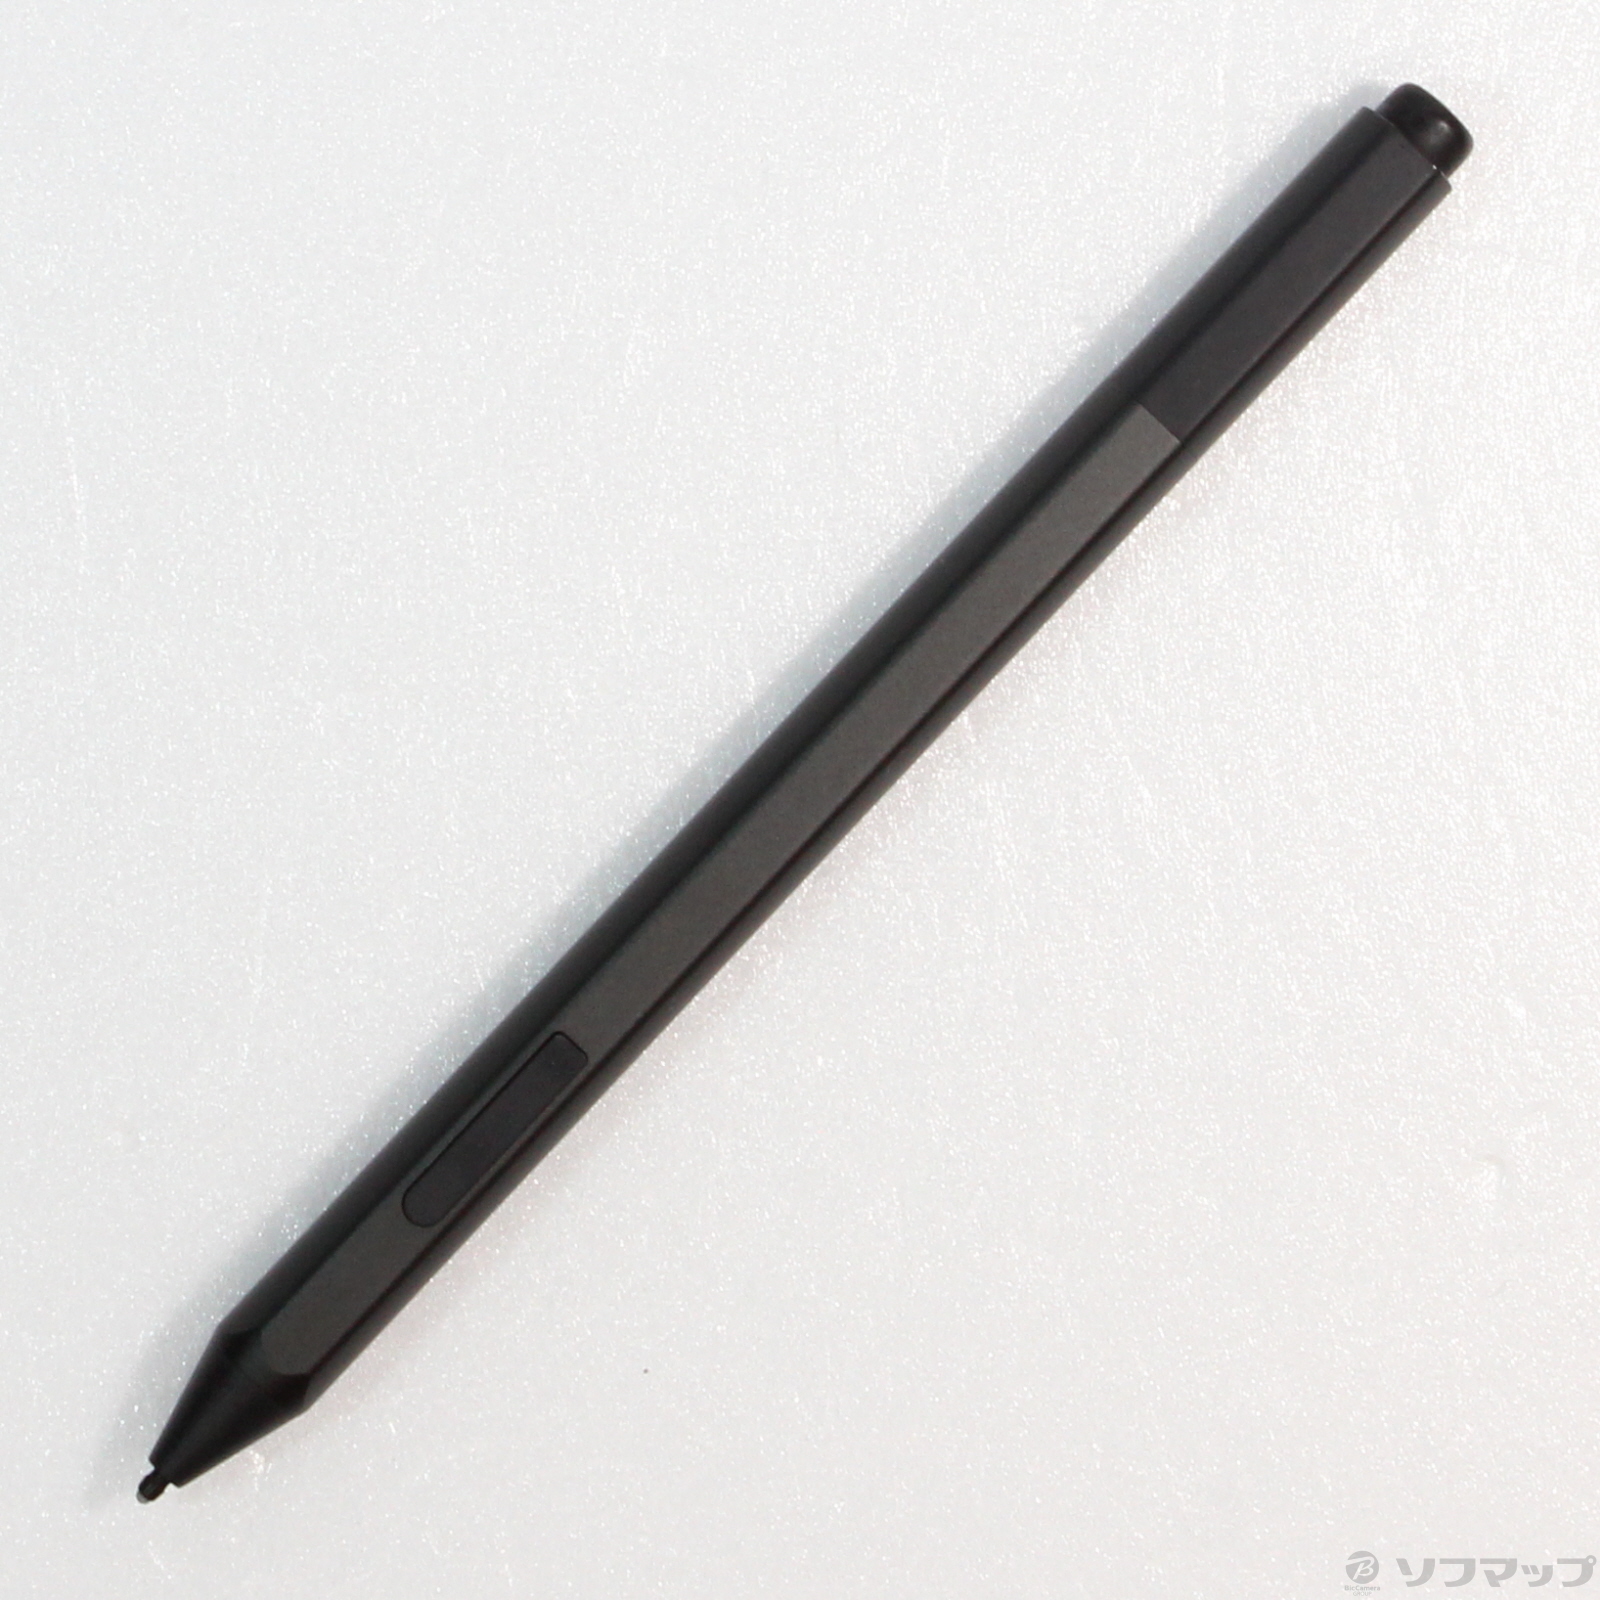 〔展示品〕 Surface Pen EYU-00007 ブラック